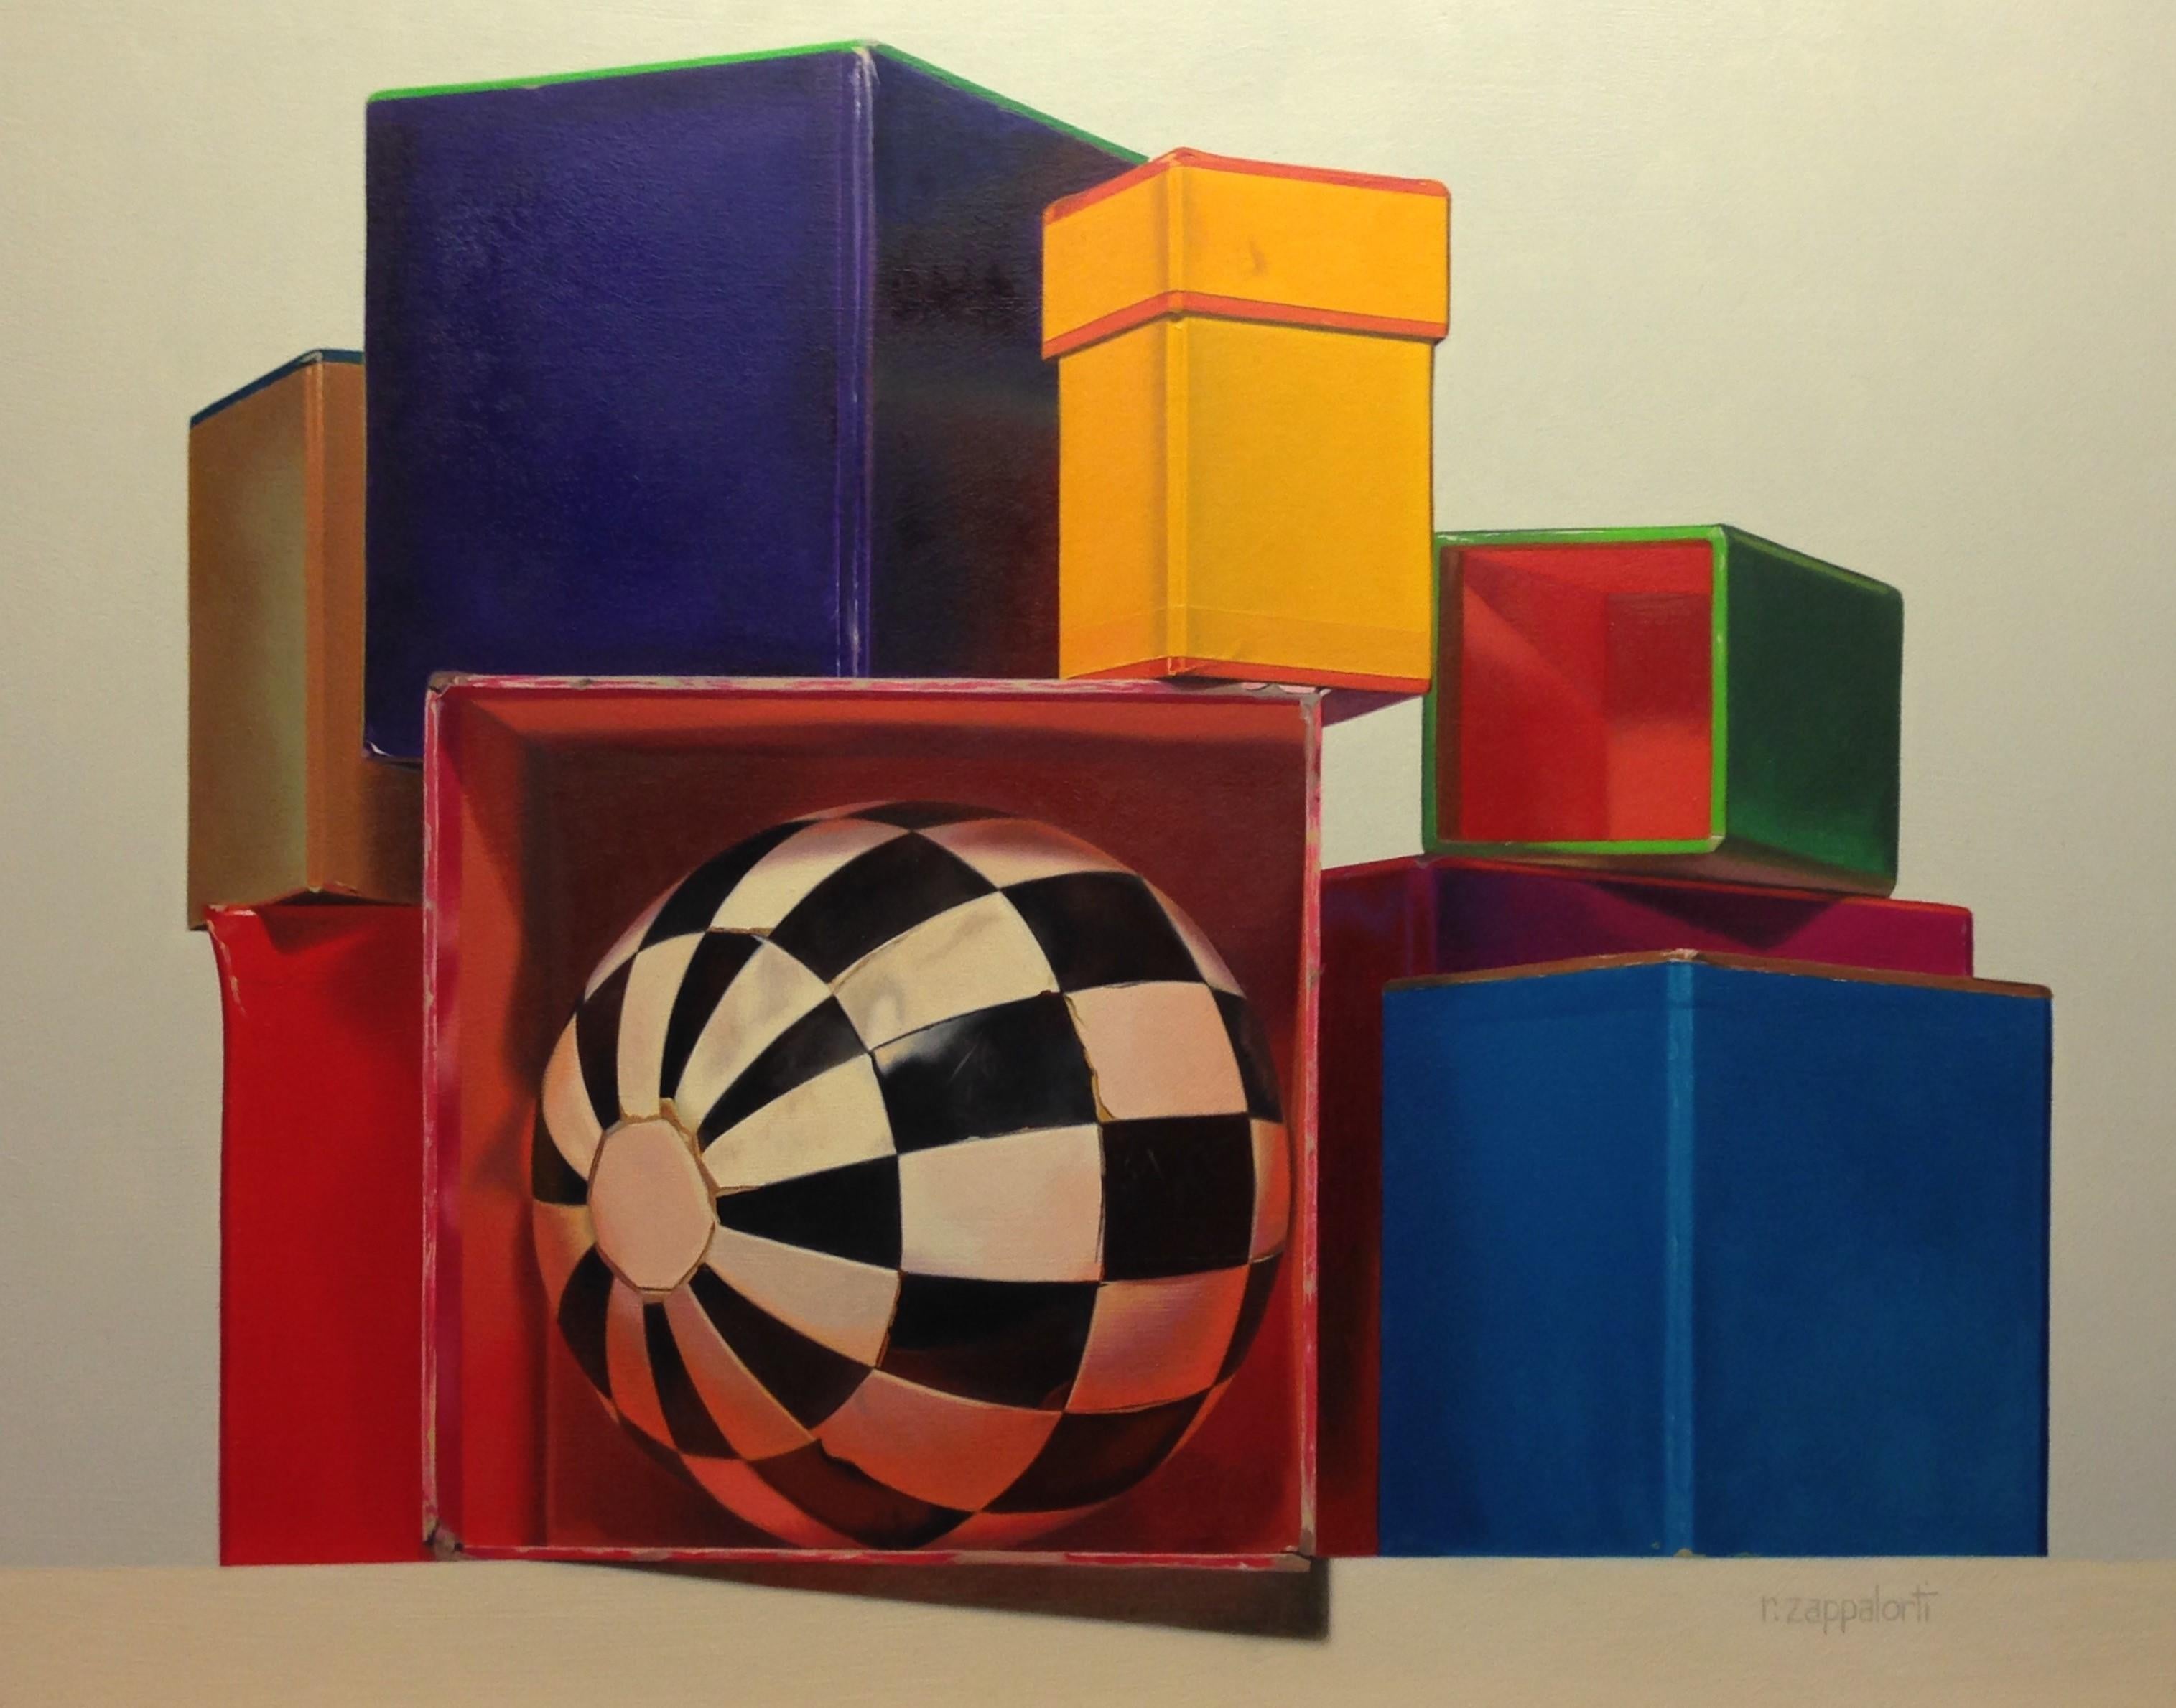 Still-Life Painting Robert Zappalorti - Shapes géométriques